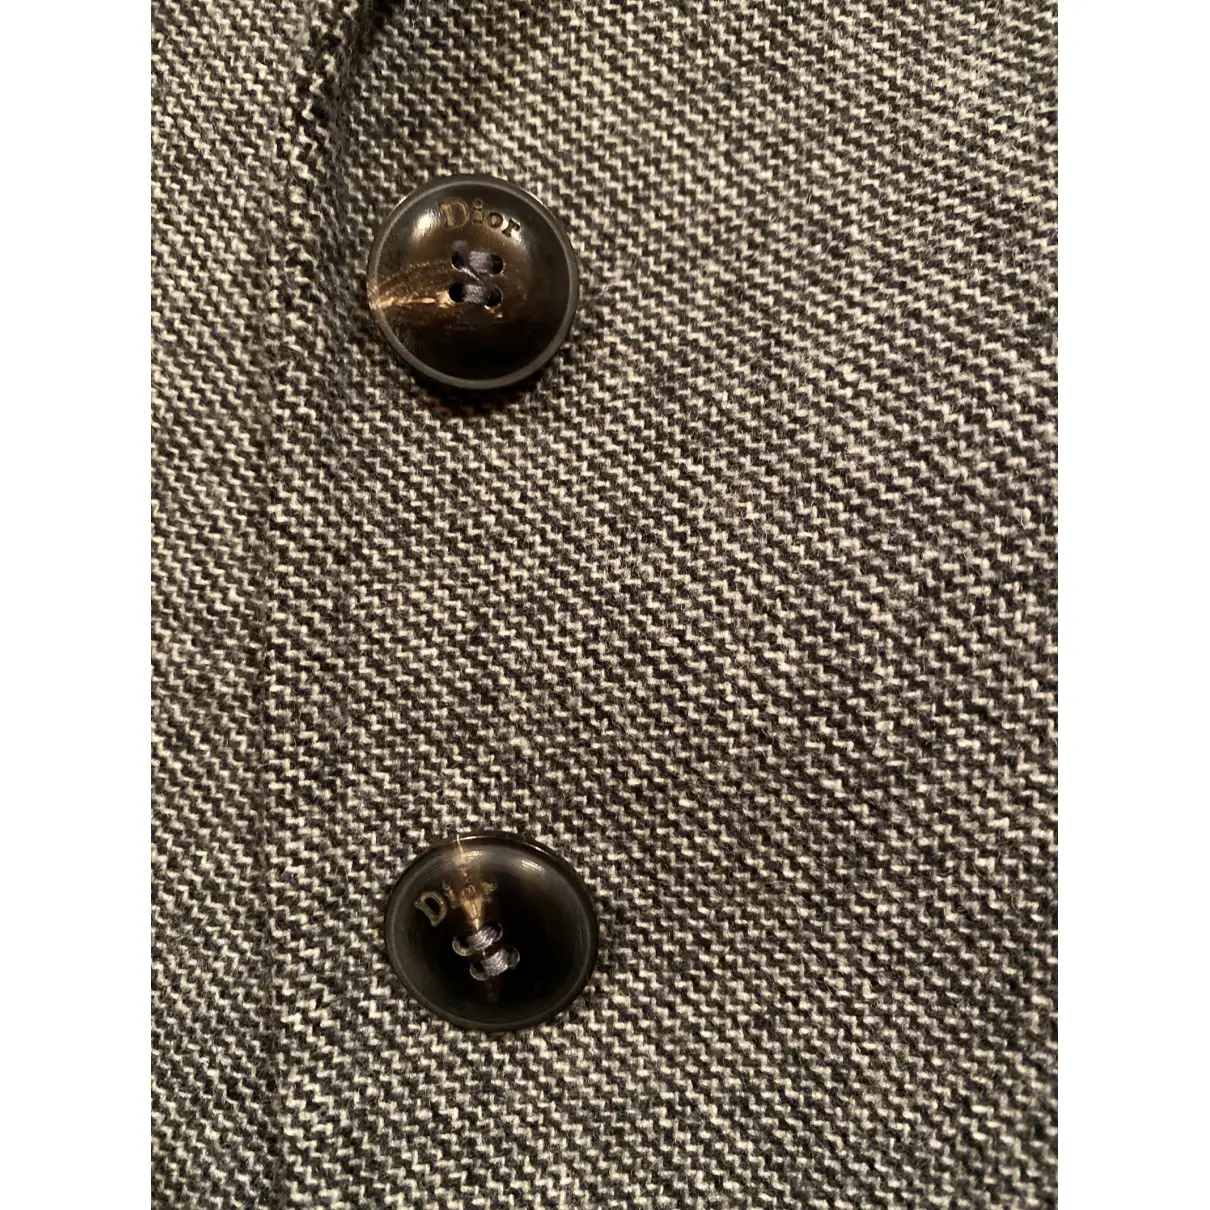 Wool suit jacket Dior - Vintage